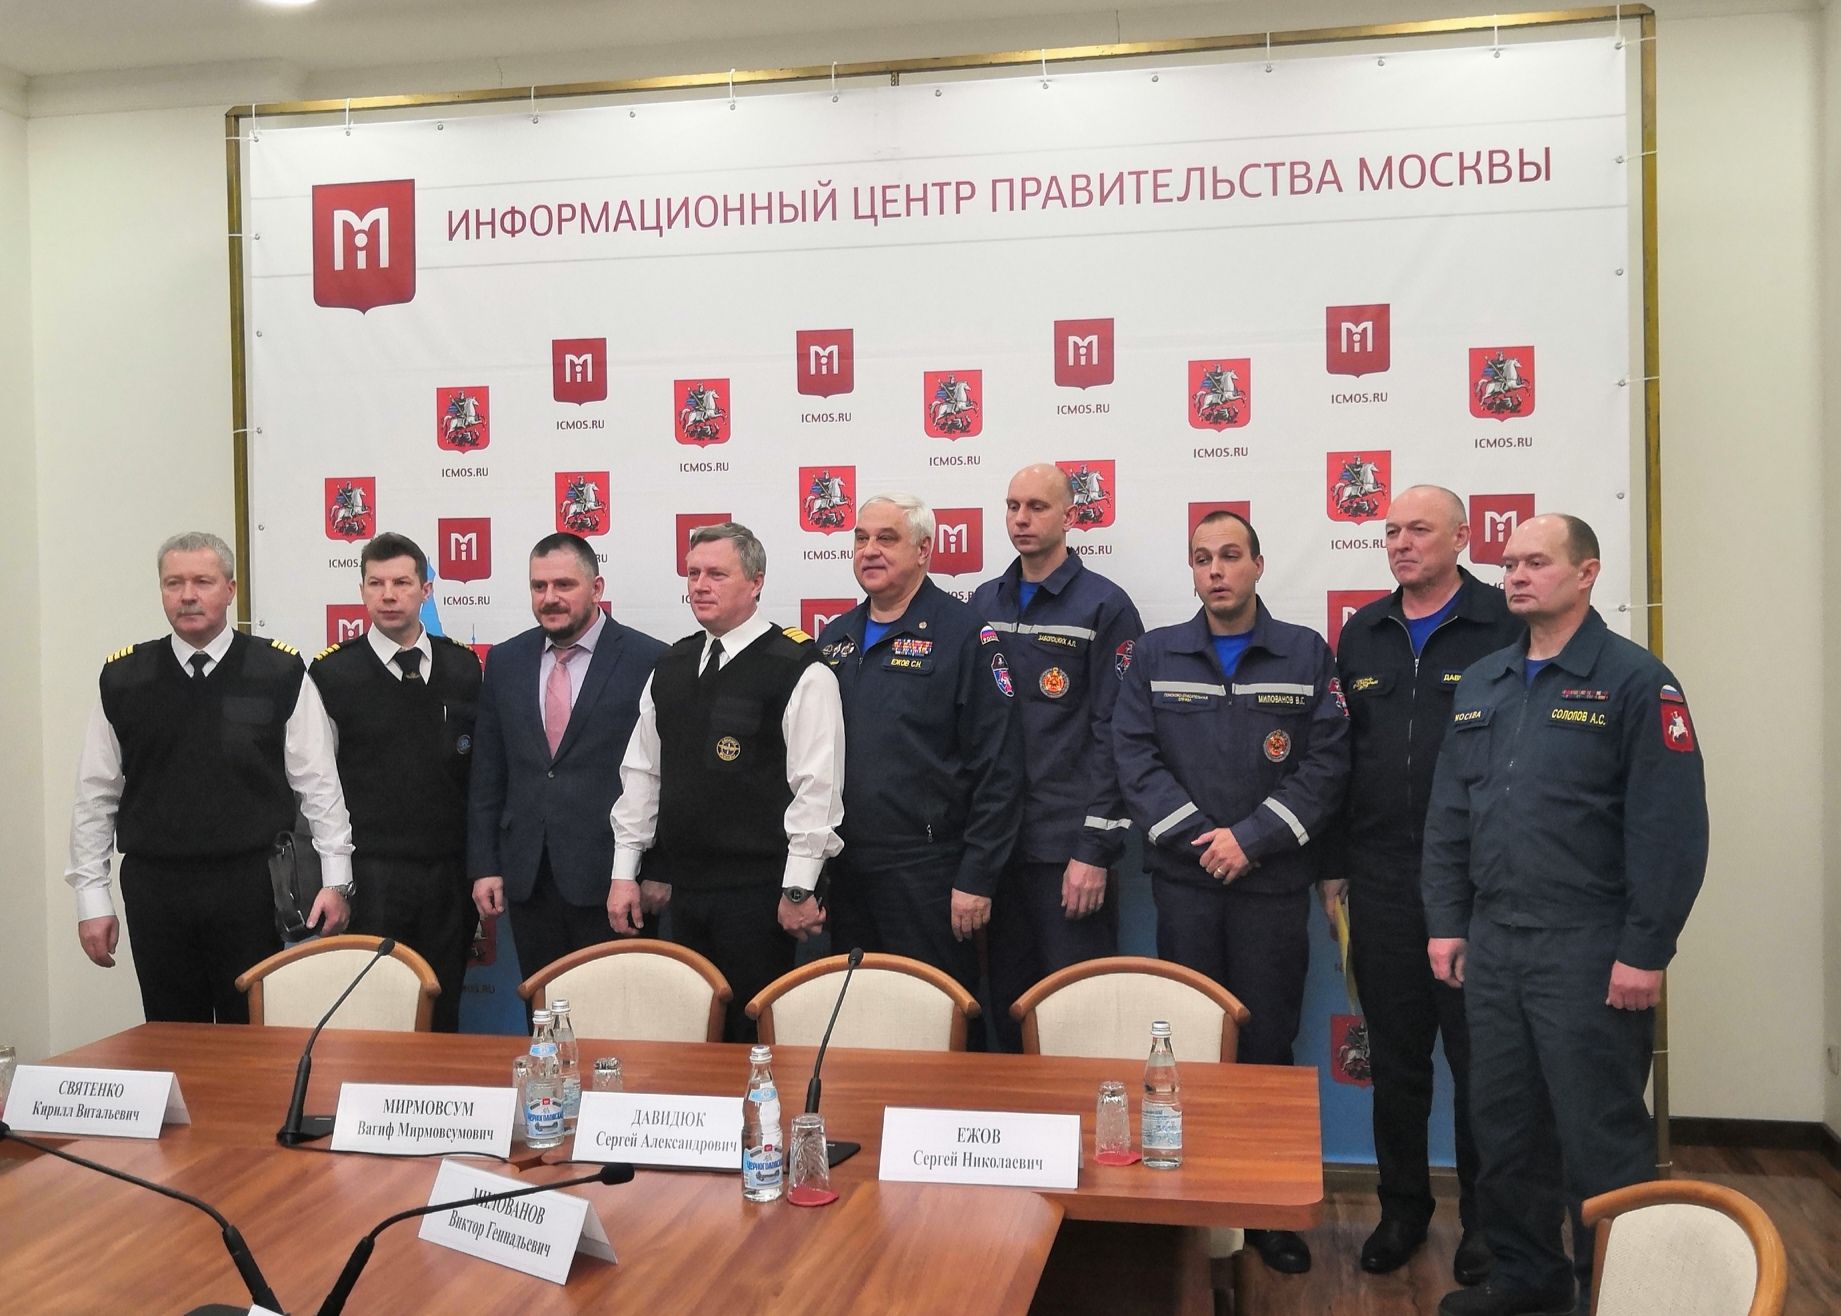 Сотрудники спасательных служб подвели итоги в Правительстве Москвы. Фото: Зифа Хакимзянова